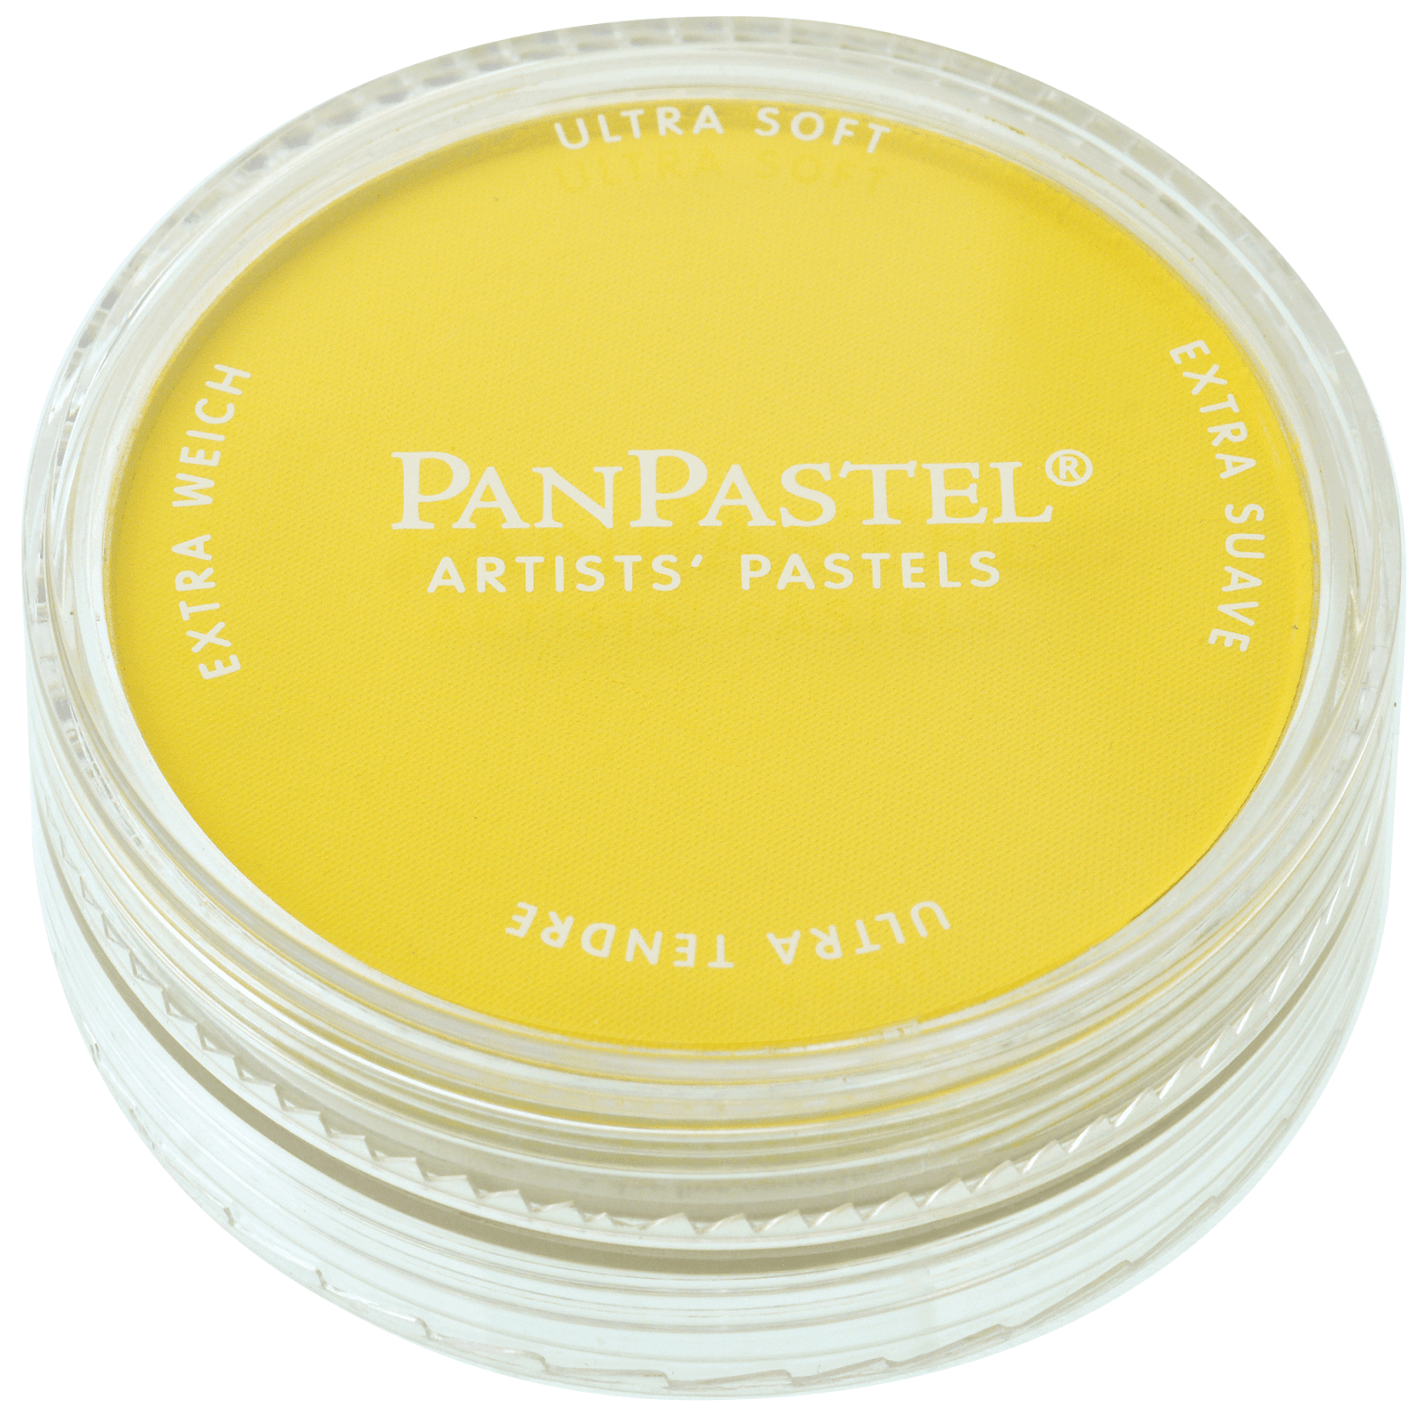 Panpastel Tørpastel 9ml Hansa Yellow 220.5